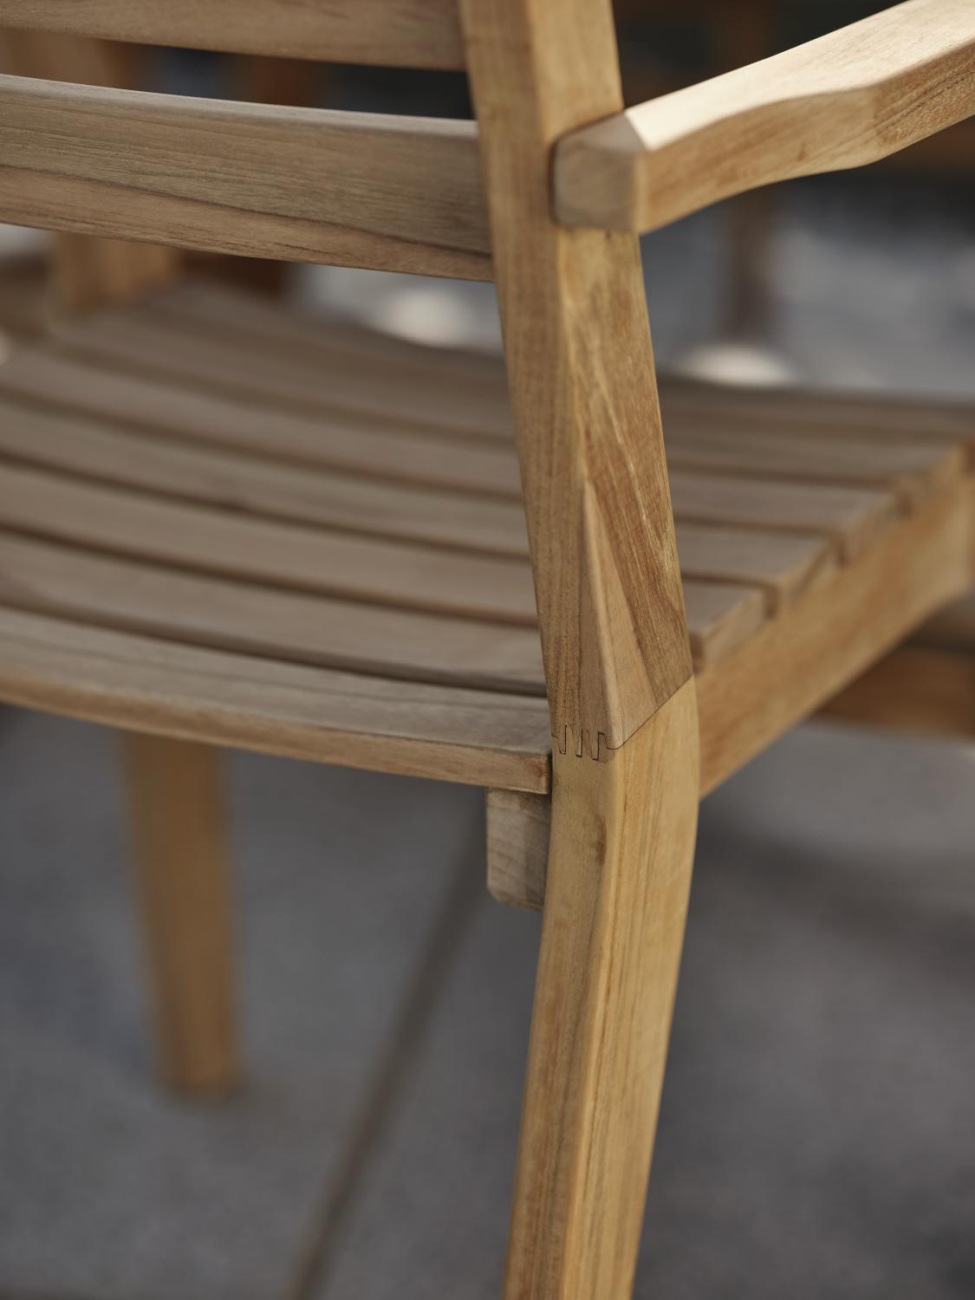 Der Gartenstuhl Keros überzeugt mit seinem modernen Design. Gefertigt wurde er aus Teakholz, welches einen natürlichen Farbton besitzt. Das Gestell ist auch aus Teakholz und hat eine natürliche Farbe. Die Sitzhöhe des Stuhls beträgt 44 cm.